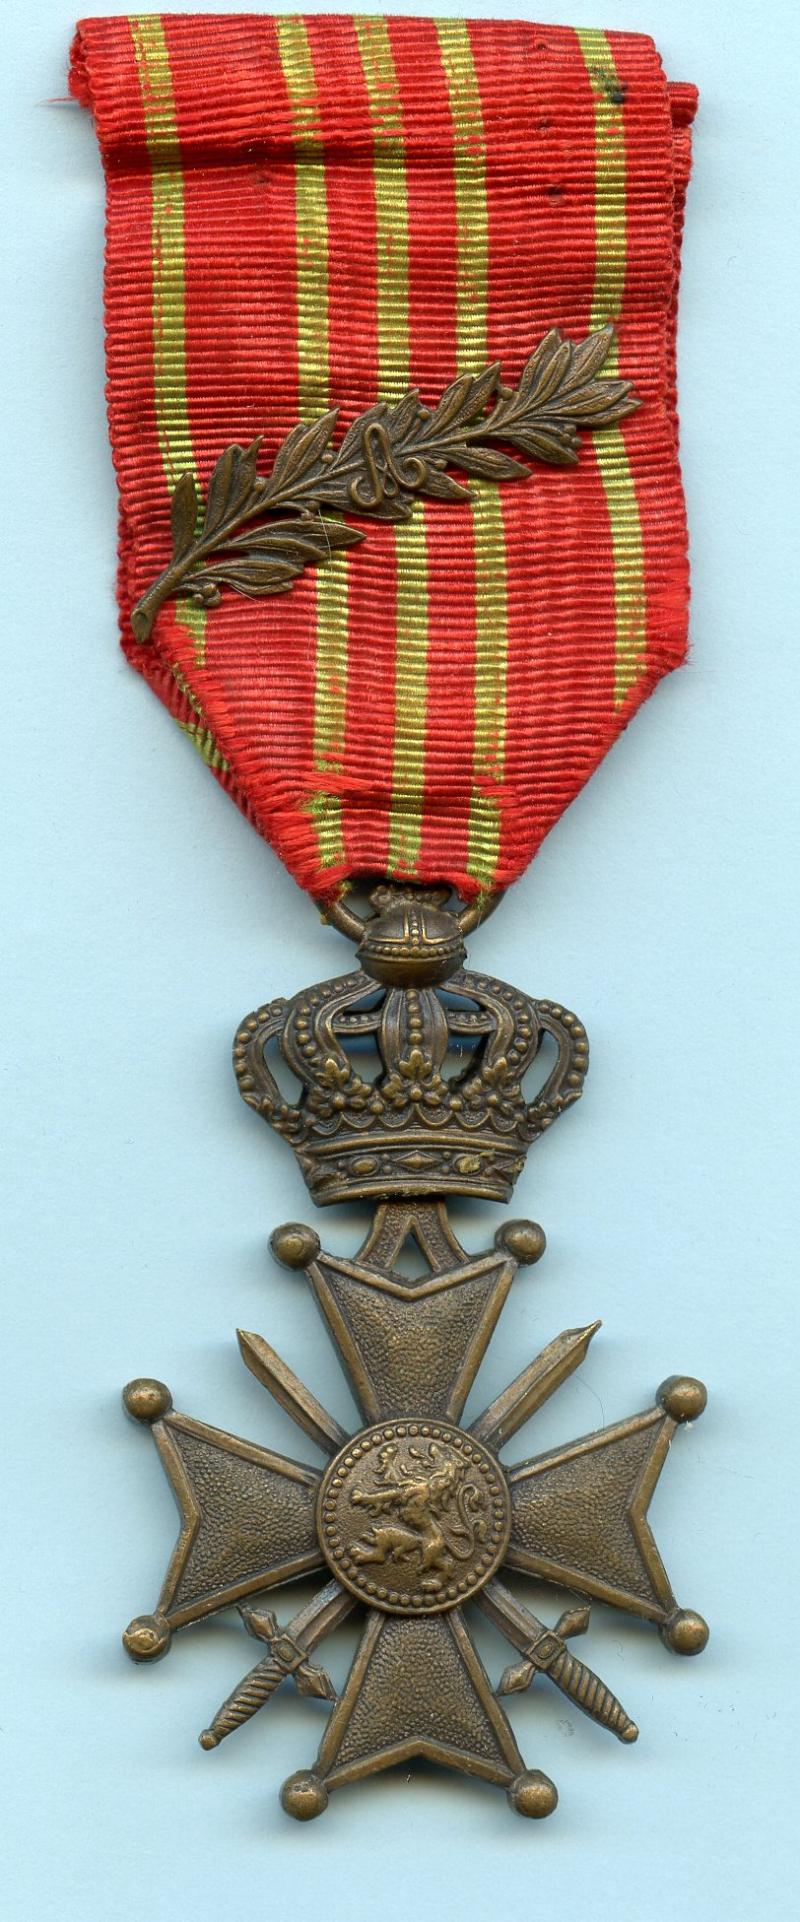 Belgium Croix De Guerre Medal with Palm